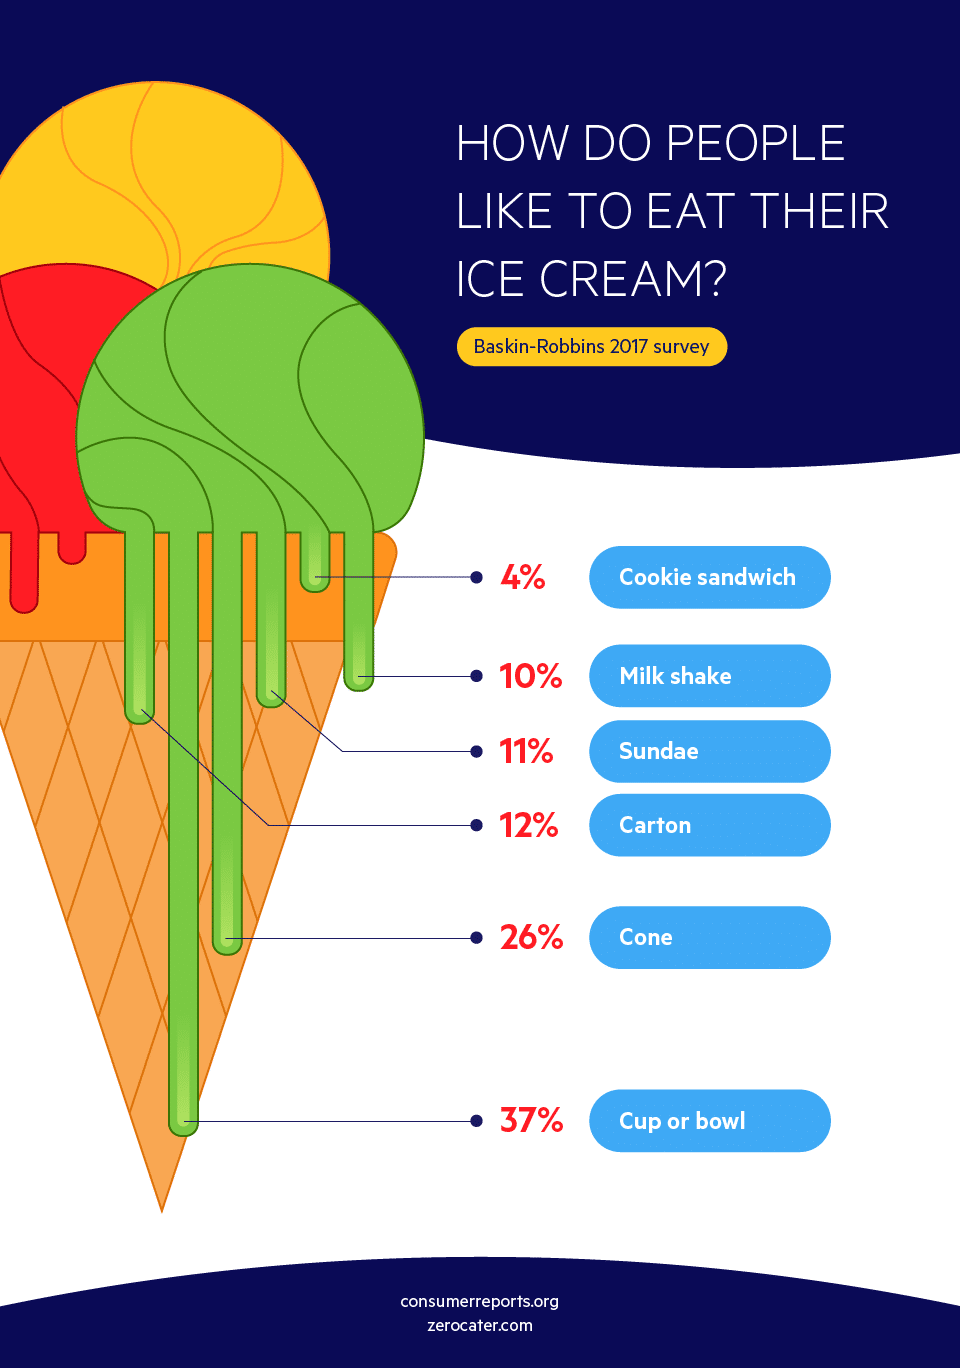 How to eat ice cream